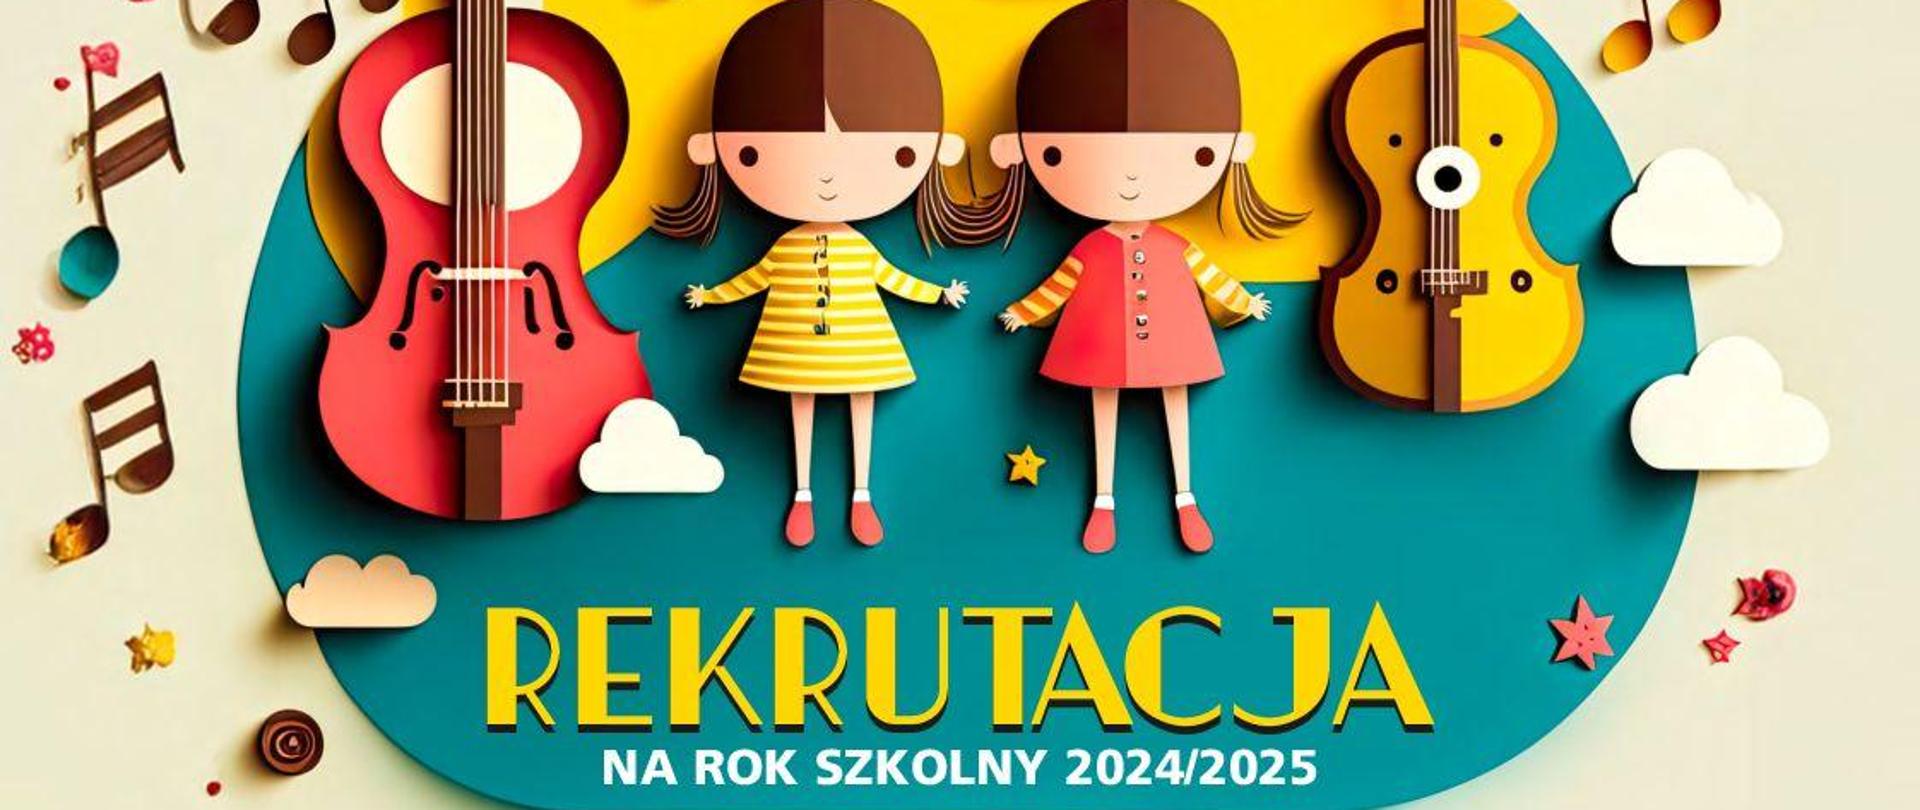 Plakat z informacjami o rekrutacji do szkoły. W środkowej części ikonografia przedstawia dzieci i instrumenty smyczkowe.